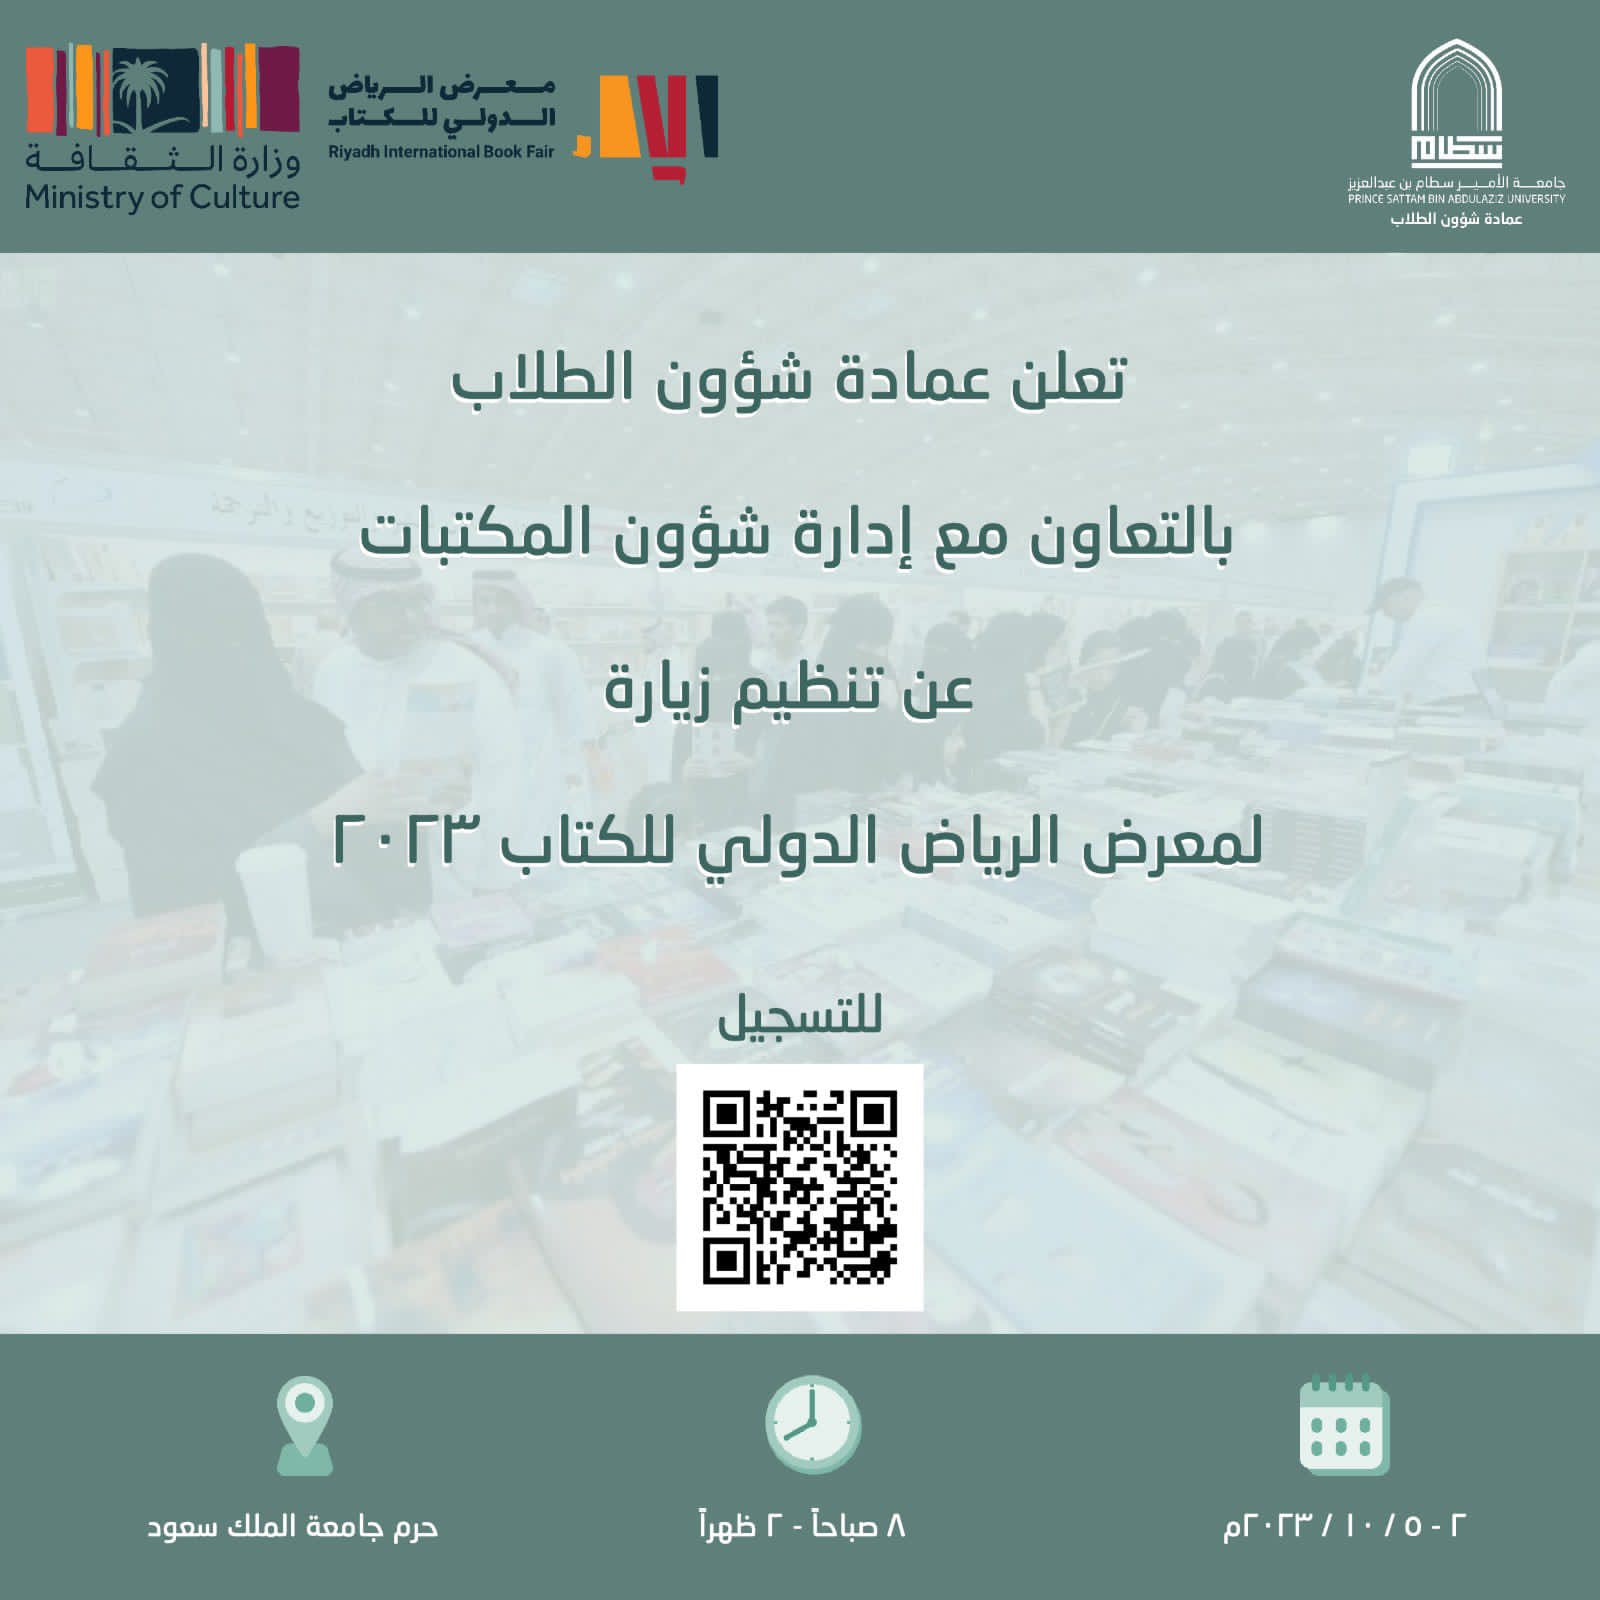 تنظم إدارة شؤون المكتبات زيارة لمعرض الرياض الدولي للكتاب 2023